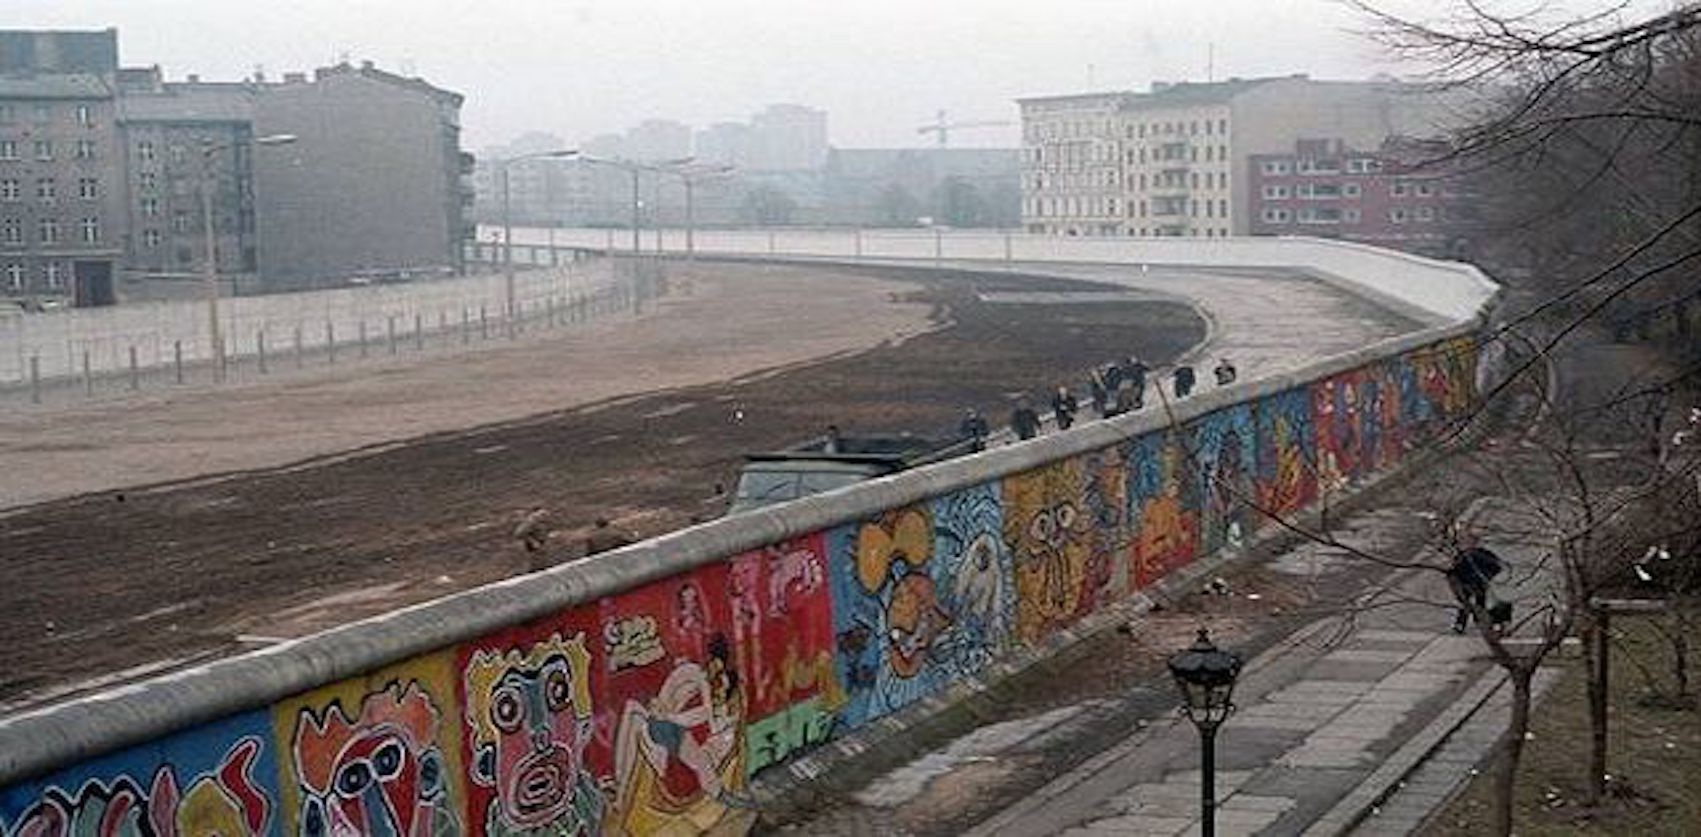 Muro De Berlin Foto